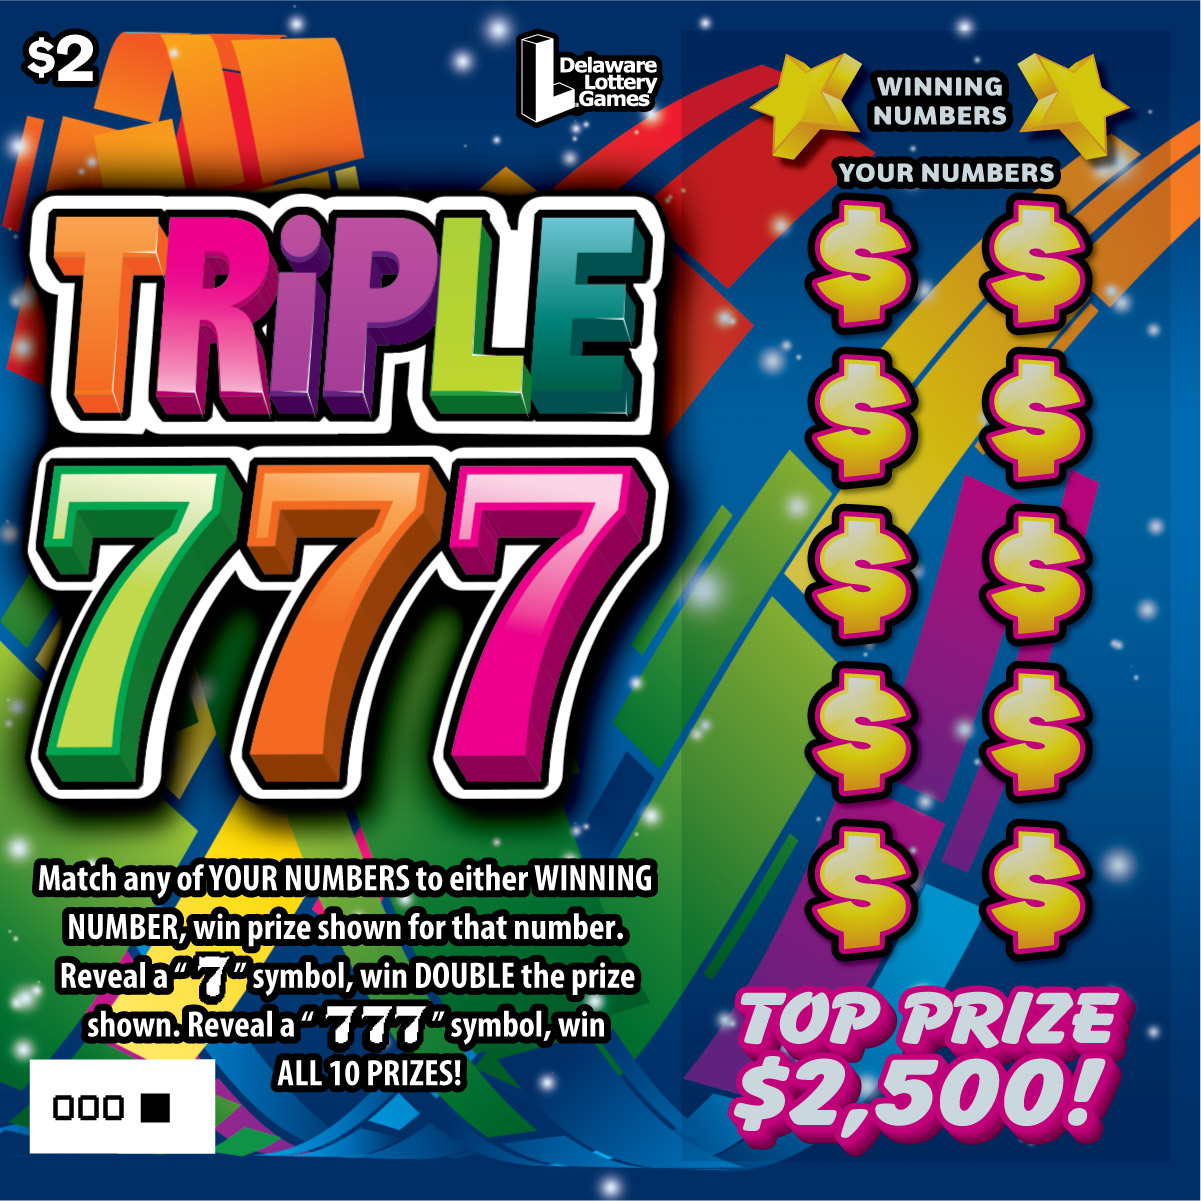 TRIPLE 777